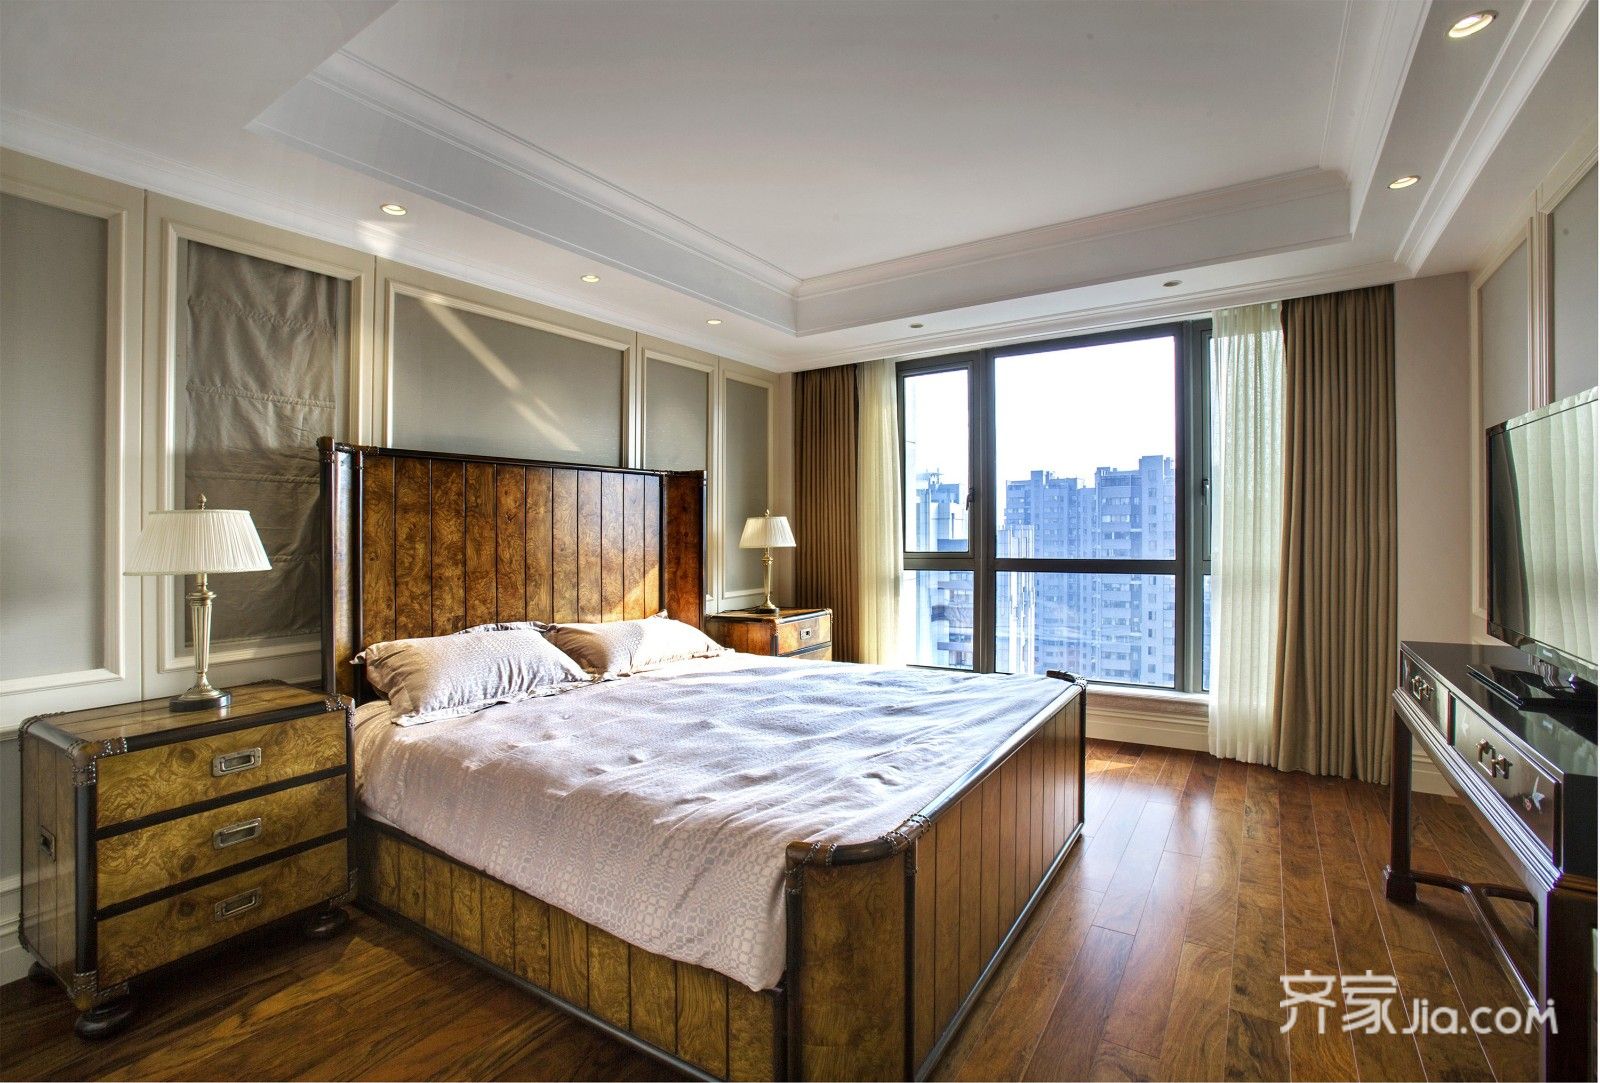 选用深棕色作为卧室的主色调,且选用墙纸材质作为墙面主材料